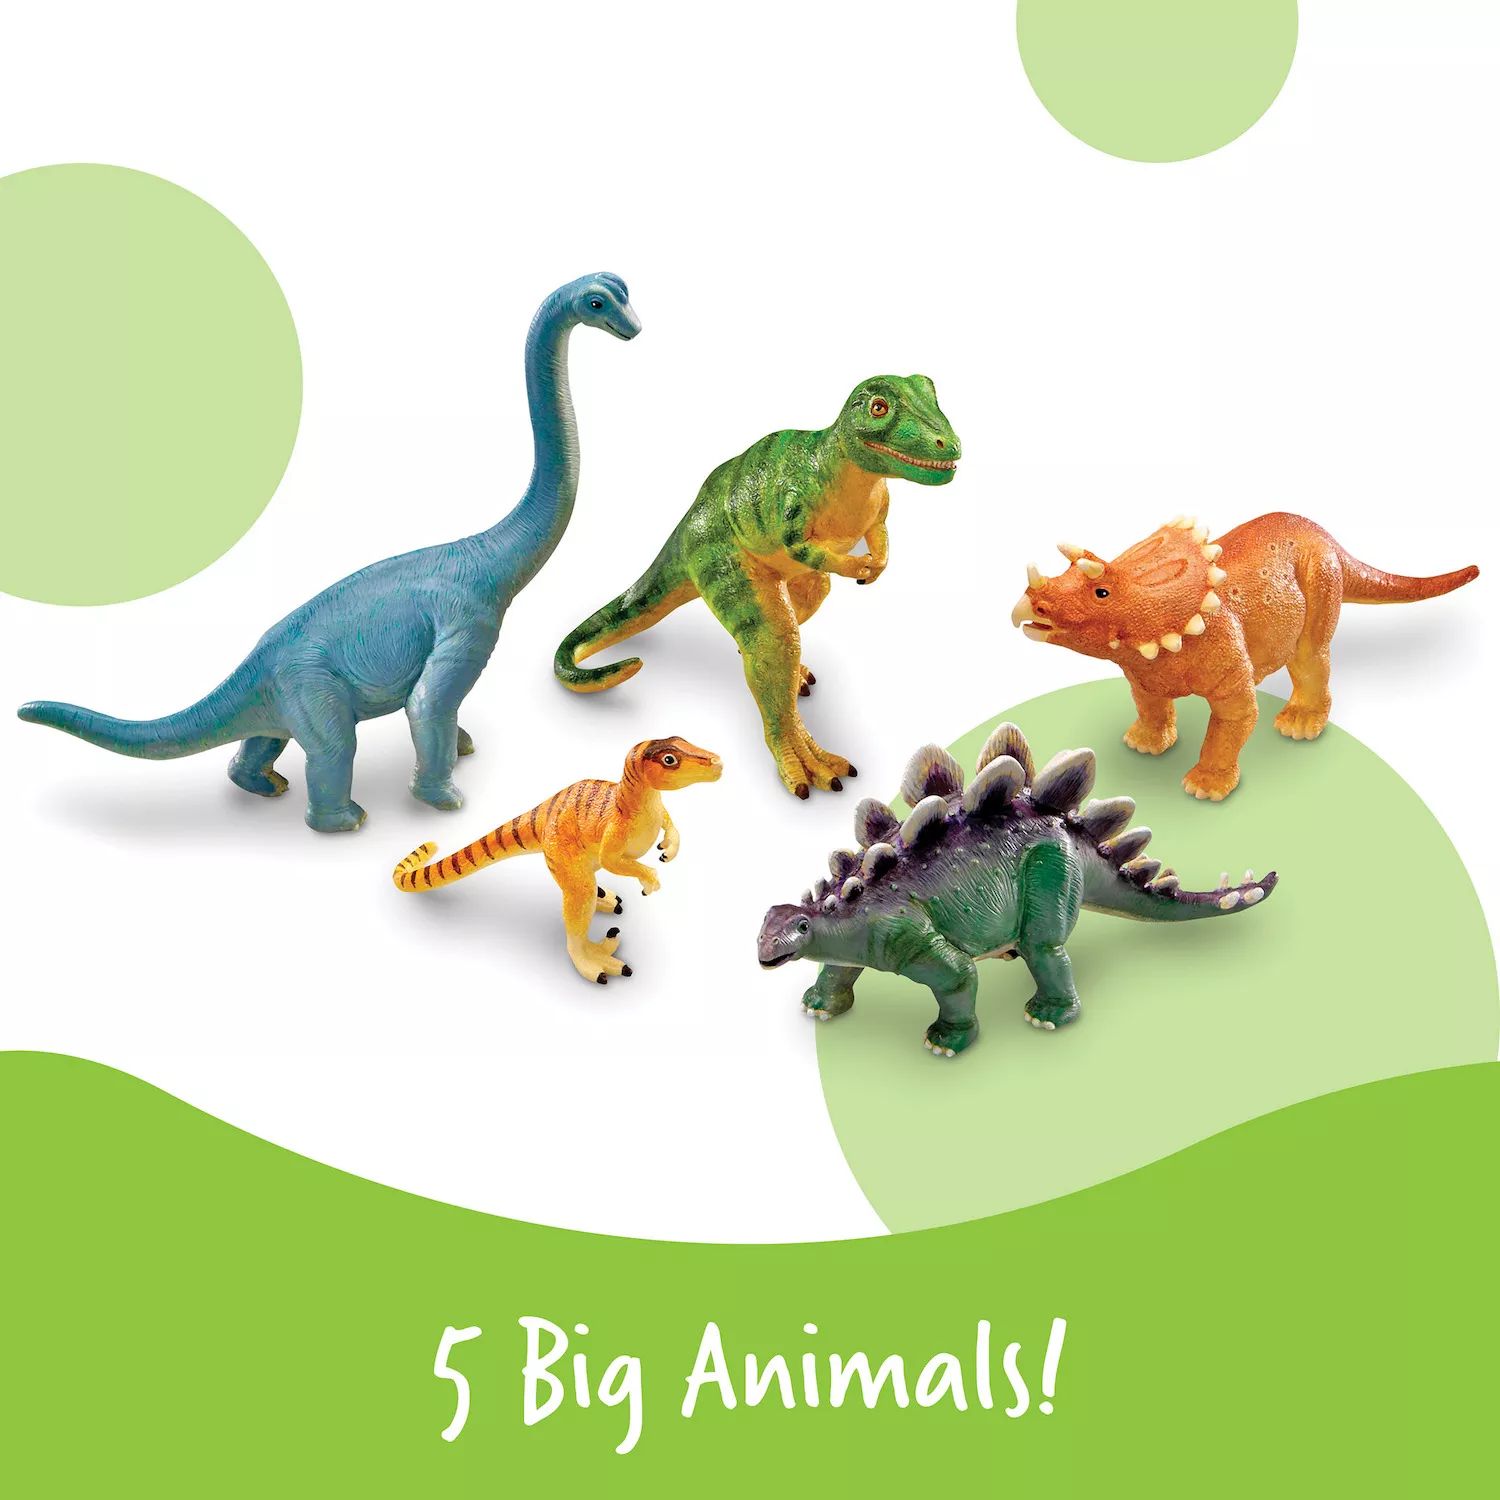 Учебные ресурсы: творческий игровой набор «Джамбо-динозавры» из 5 предметов Learning Resources фотографии